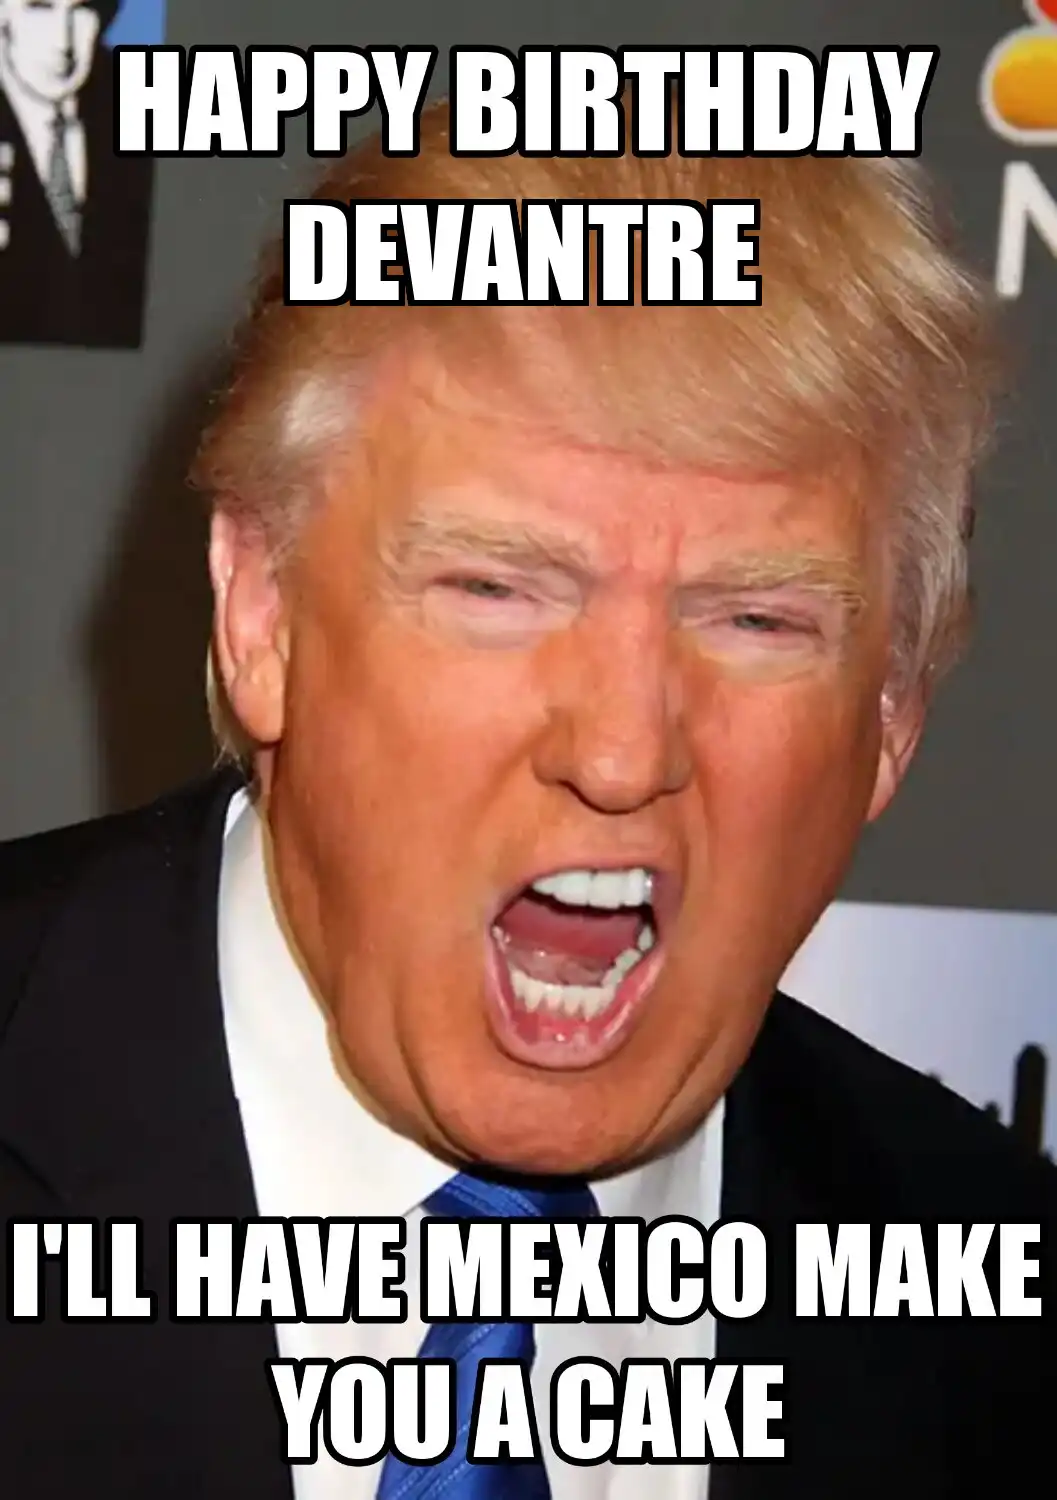 Happy Birthday Devantre Mexico Make You A Cake Meme